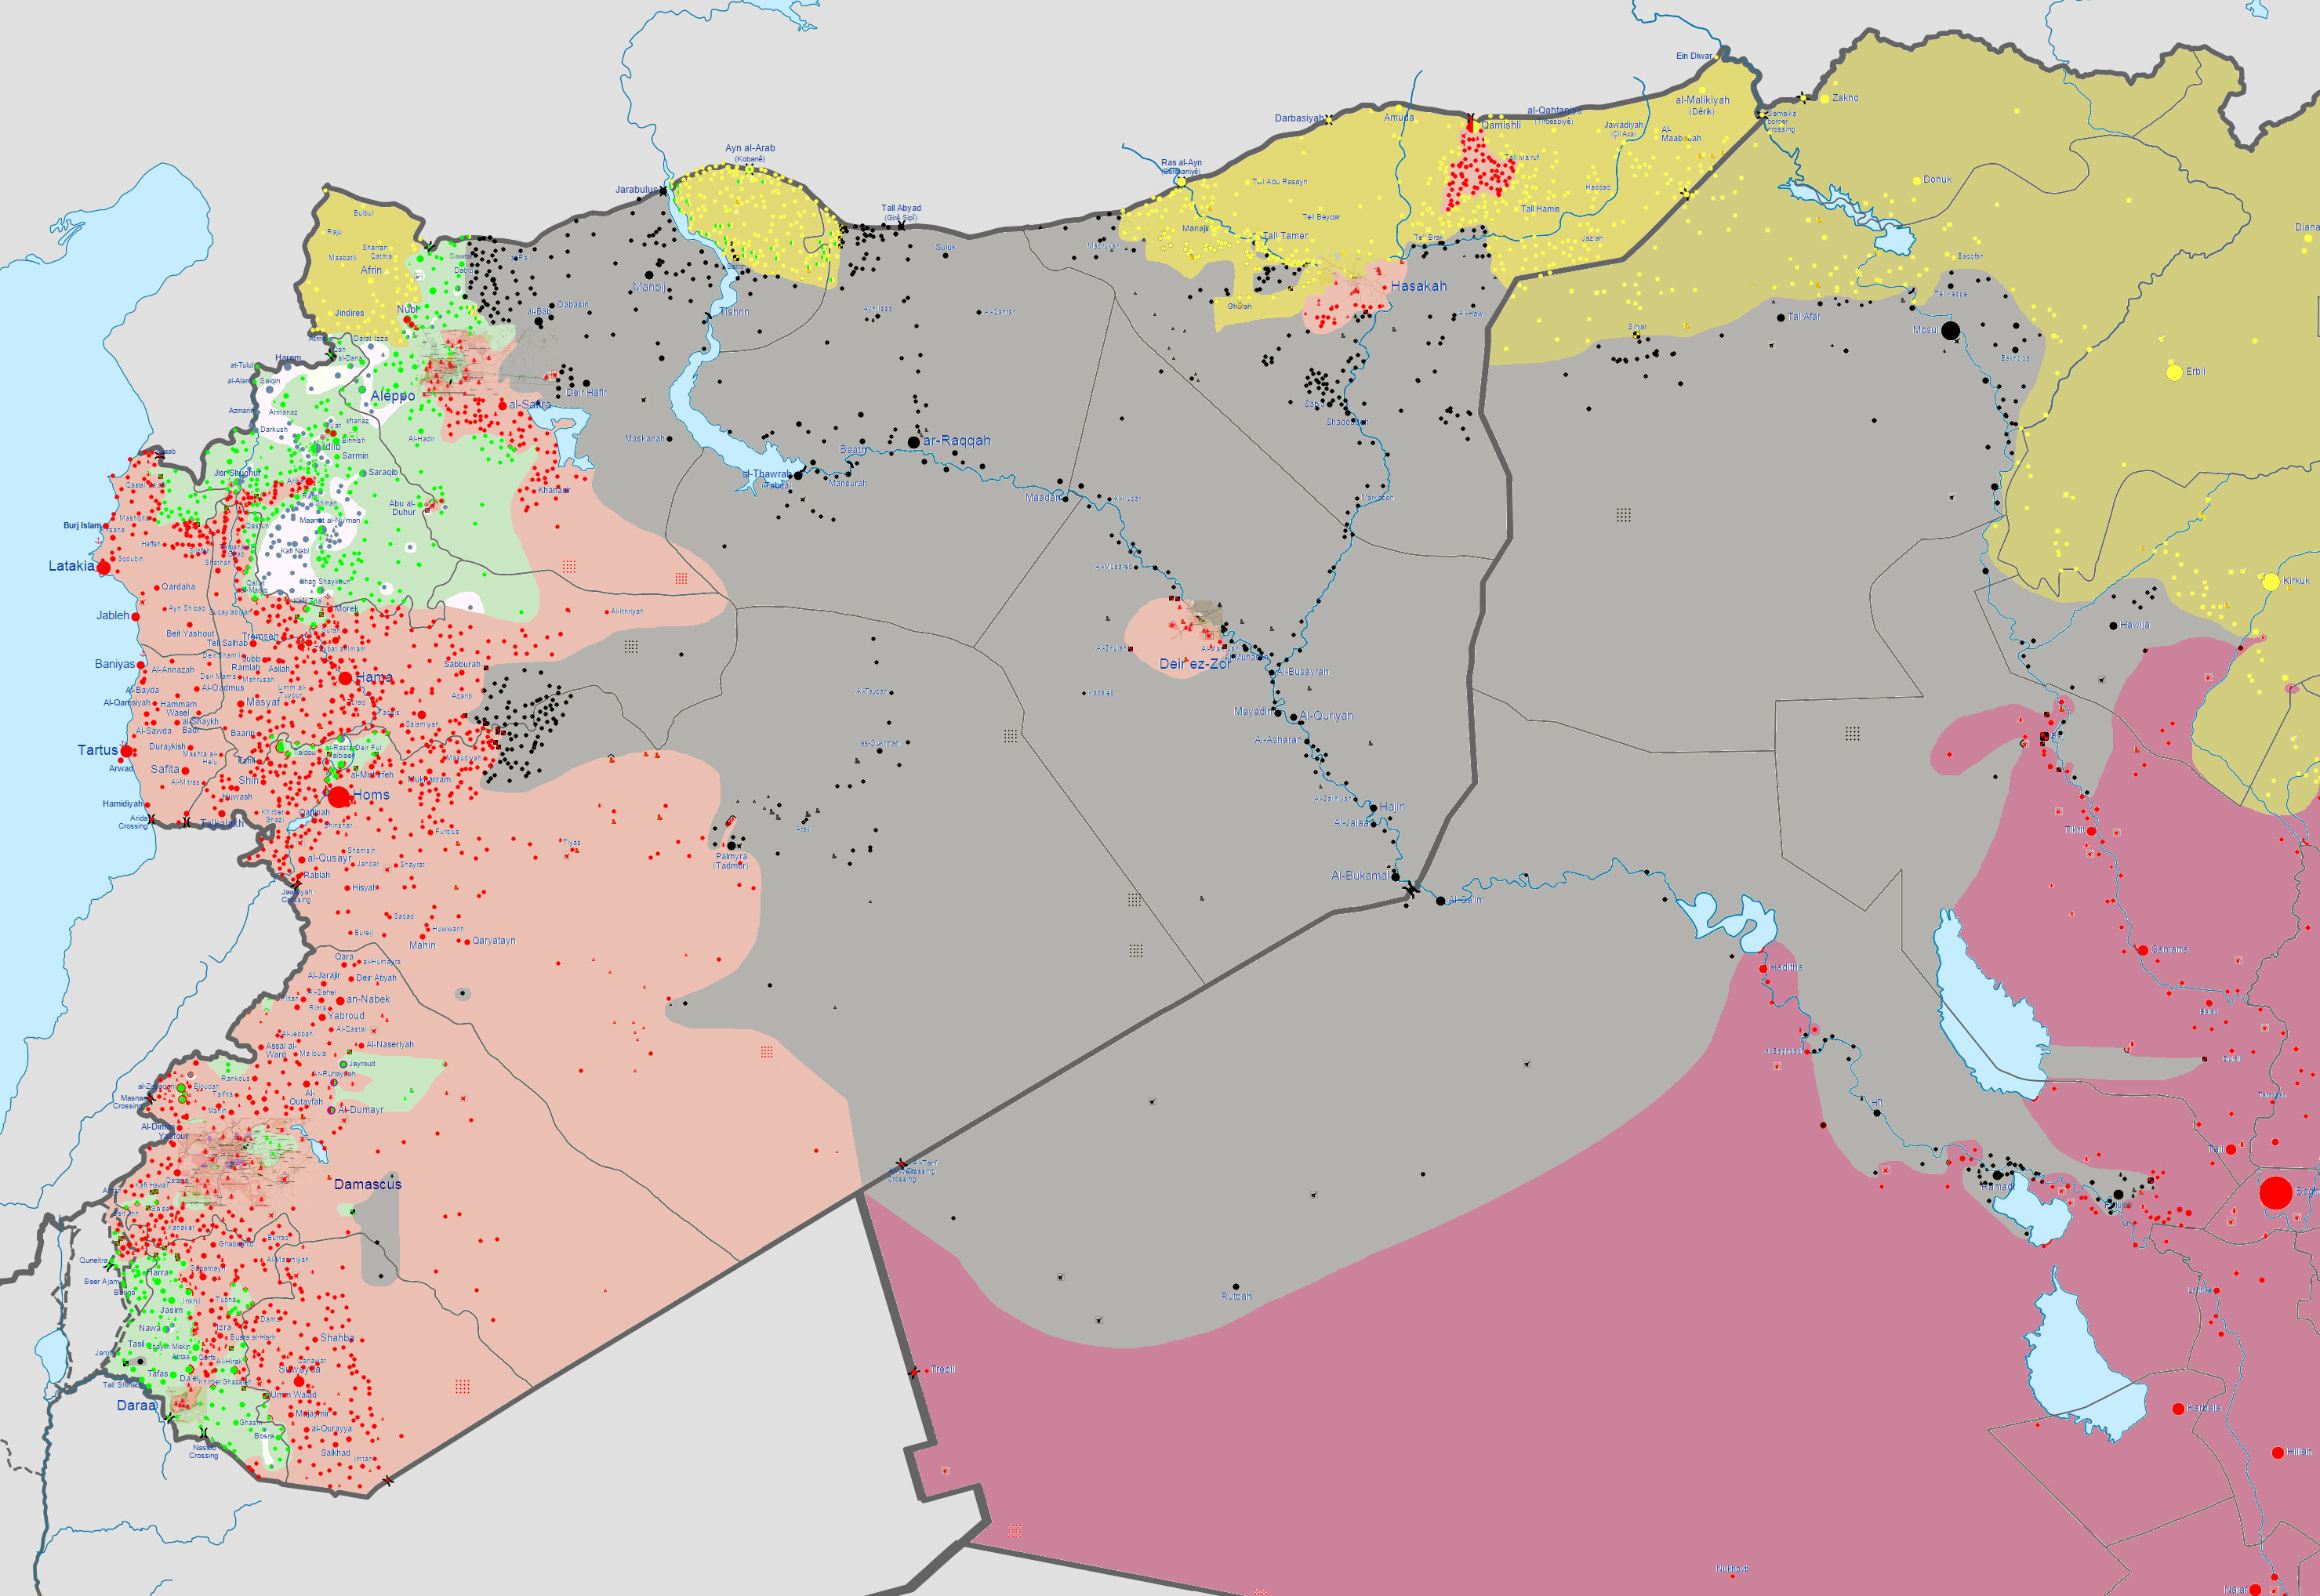 La situation irako-syrienne actuelle correspond en partie aux prévisions des renseignements militaires américains, avec les villes de Mossoul et Ramadi en main de l'EI (en noir), et le régime syrien concentré sur l'est du pays (en rouge). [Wikimedia Commons]